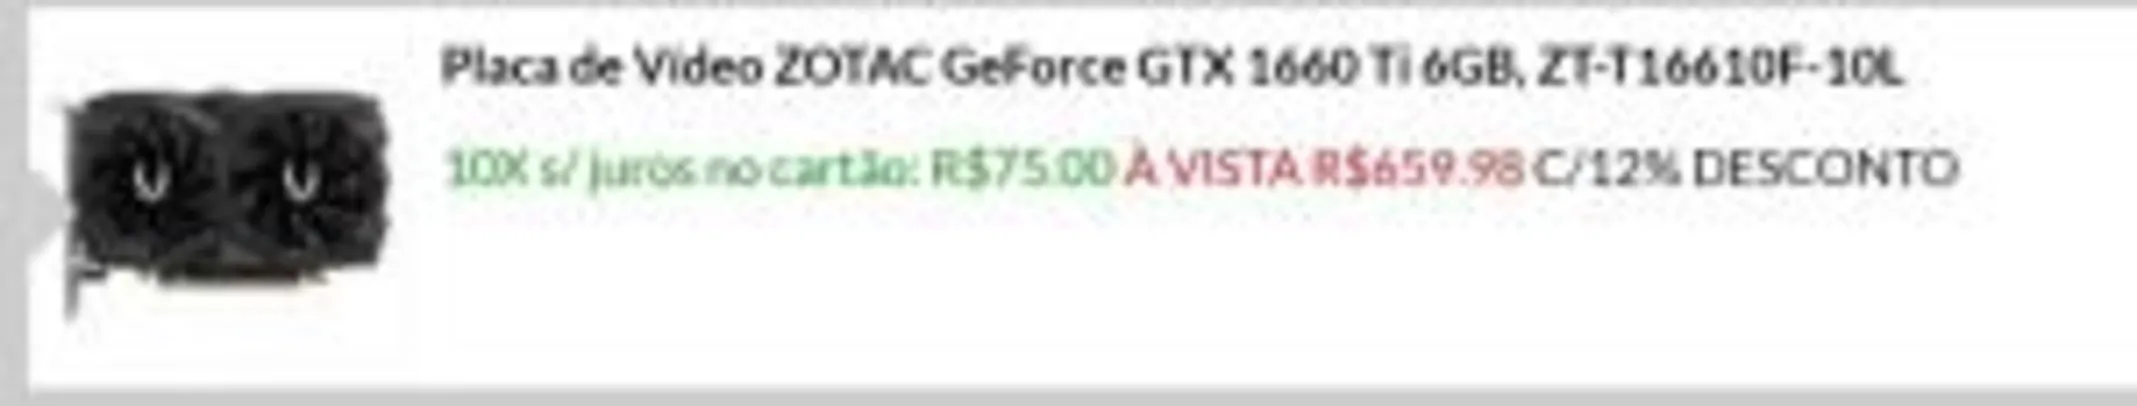 GTX 1660TI 6GB R$750